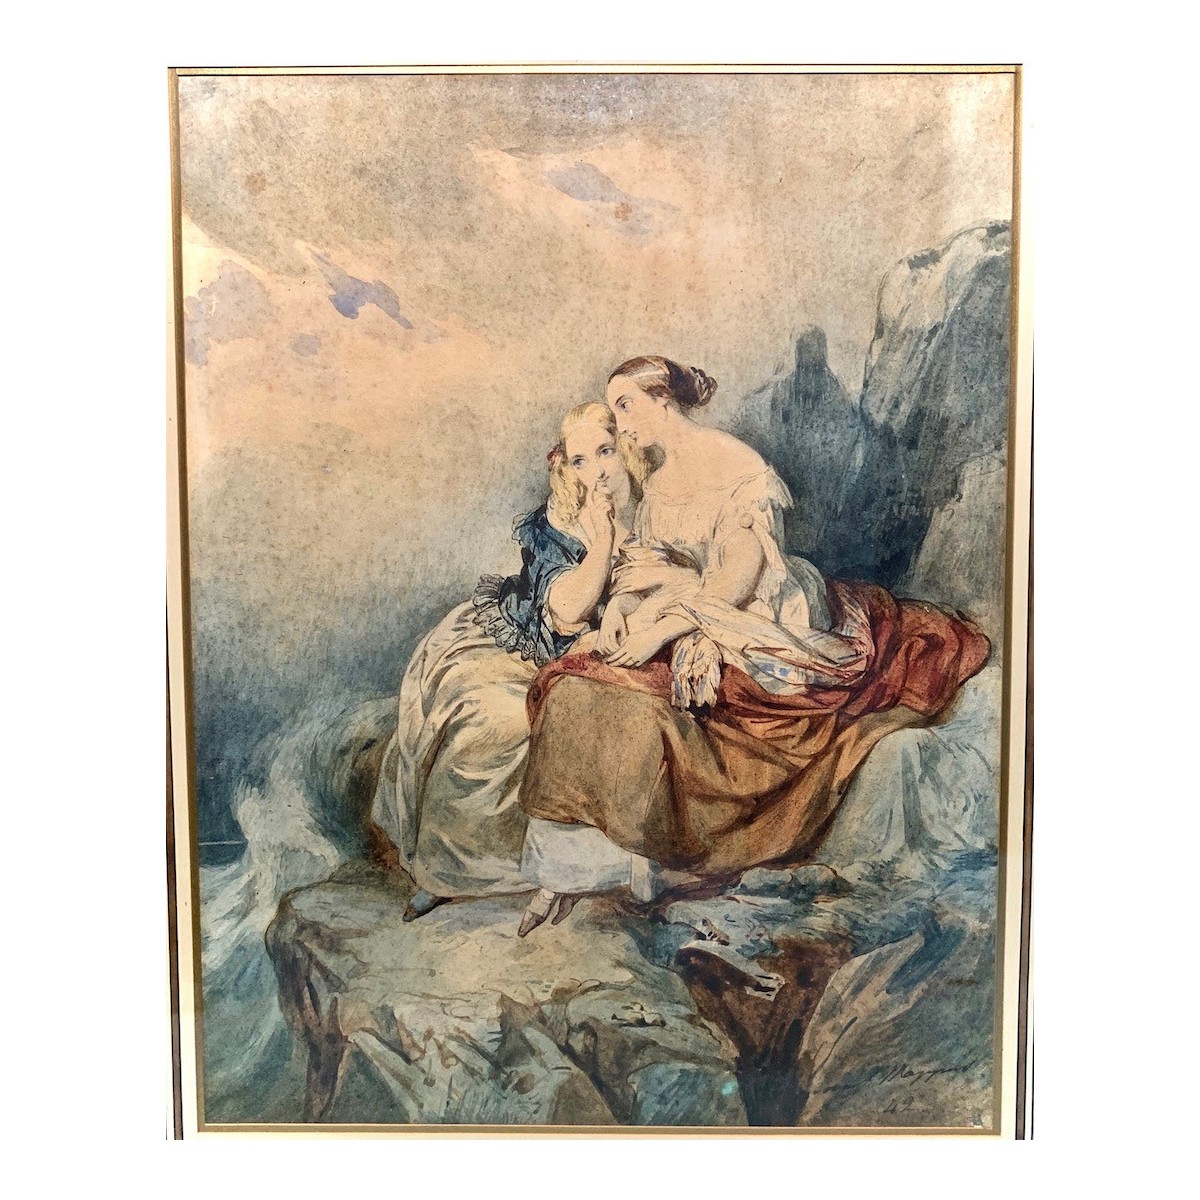 Acuarela del siglo XIX, mujeres contemplando el mar.